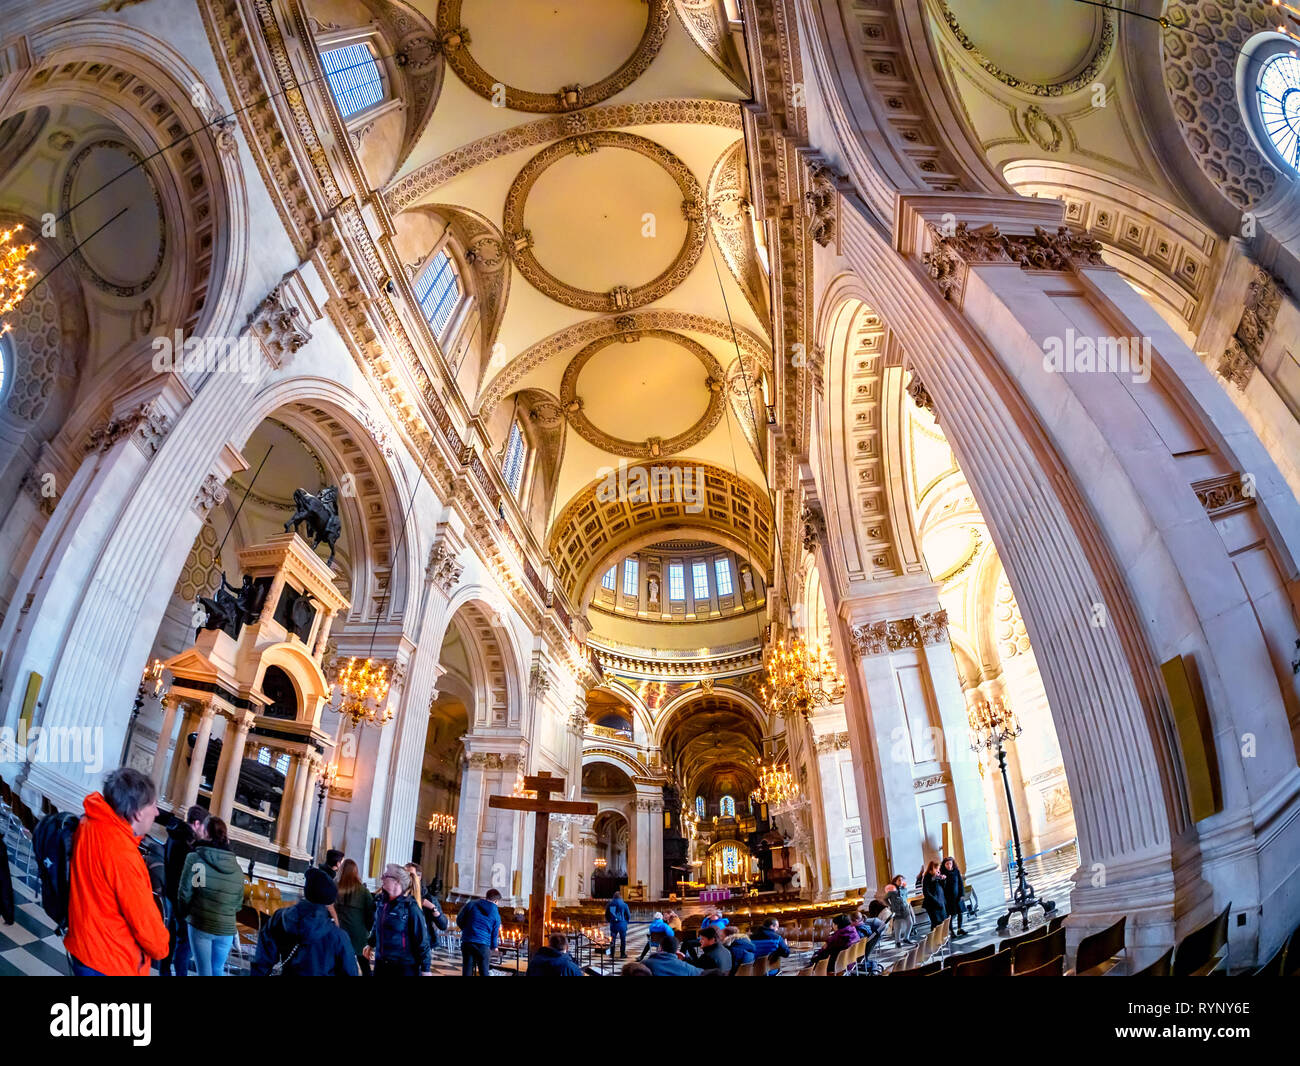 Londres, Angleterre, Royaume-Uni - 10 mars 2019 - architecture intérieure de la célèbre cathédrale Saint Paul avant la cérémonie religieuse à Londres Banque D'Images